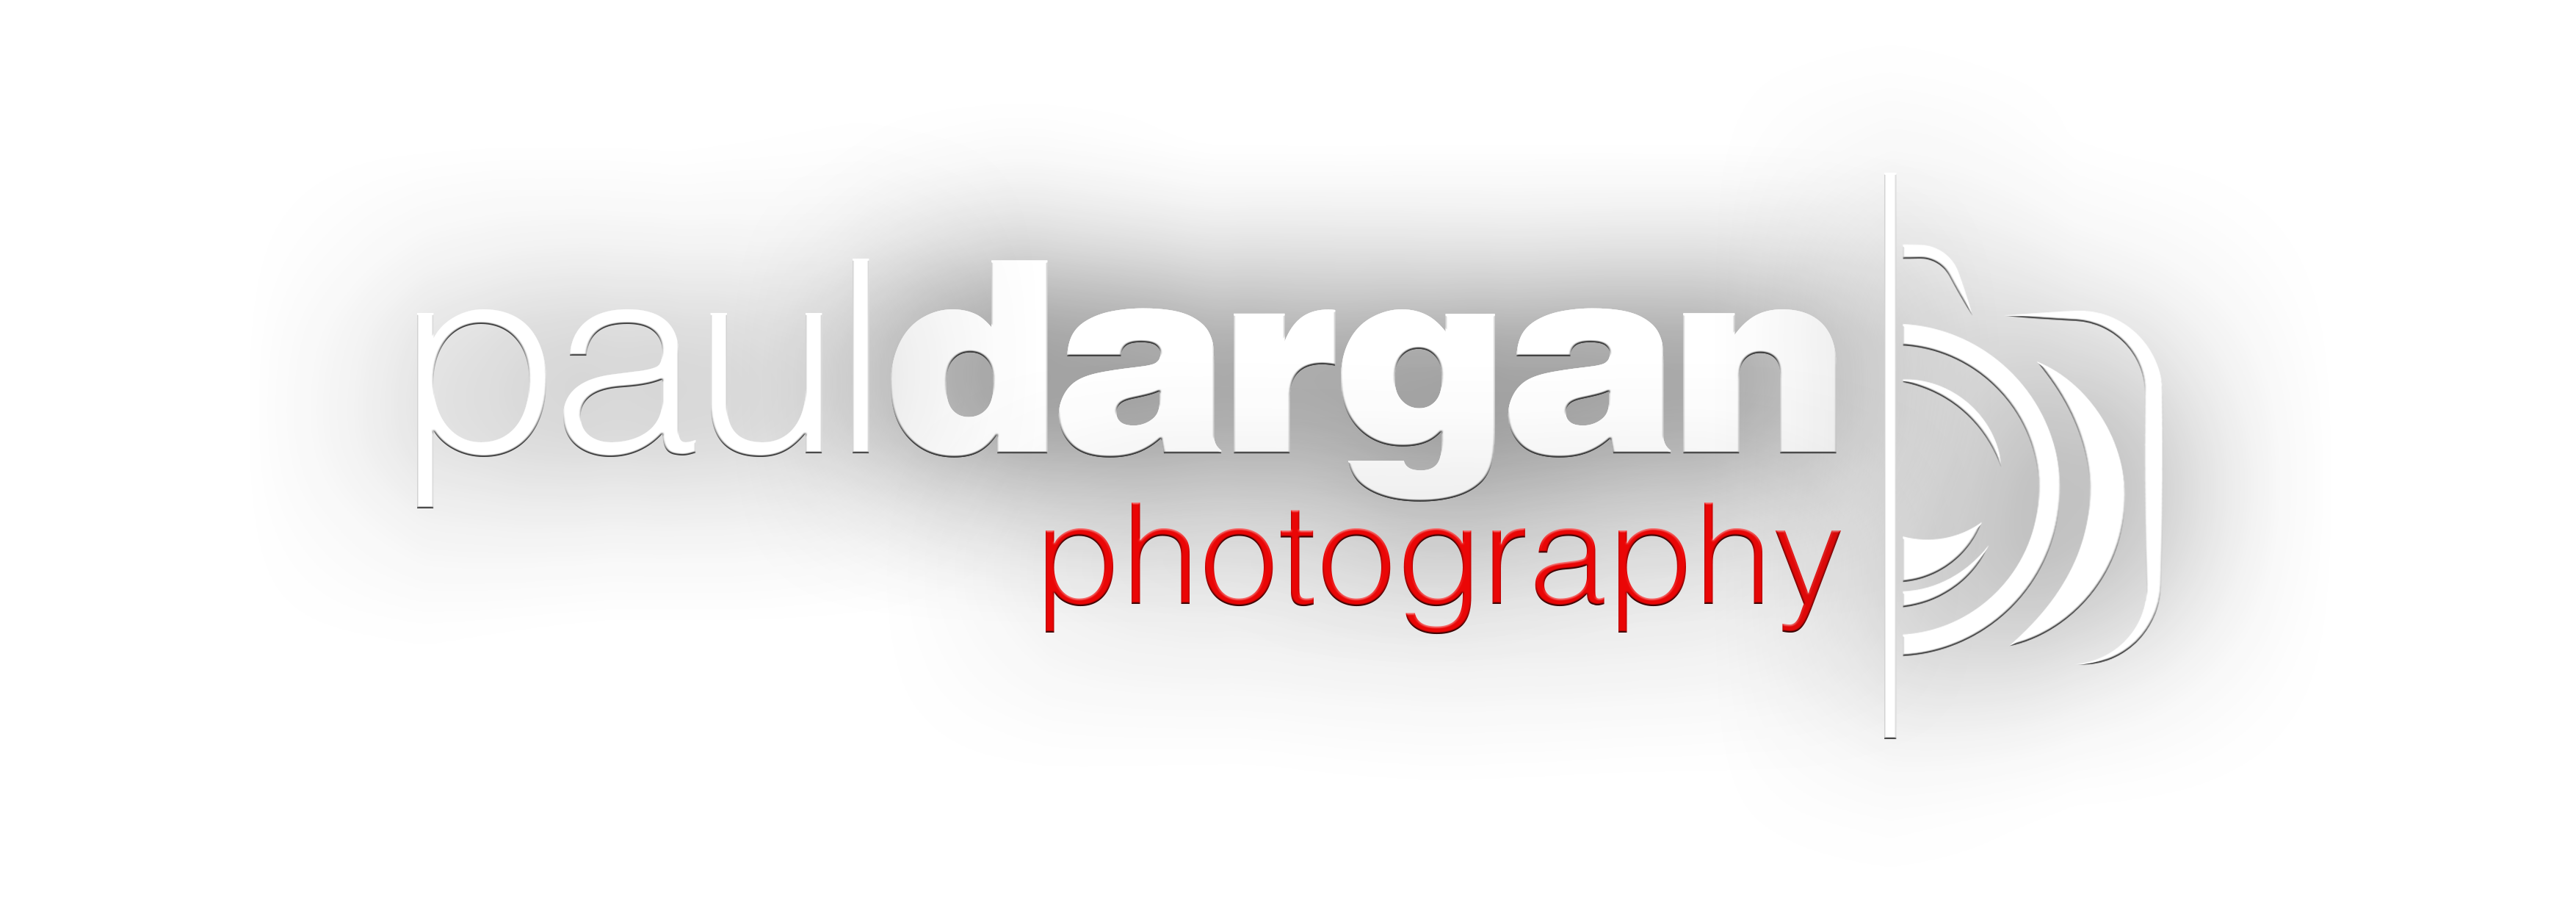 Paul Dargan Photography